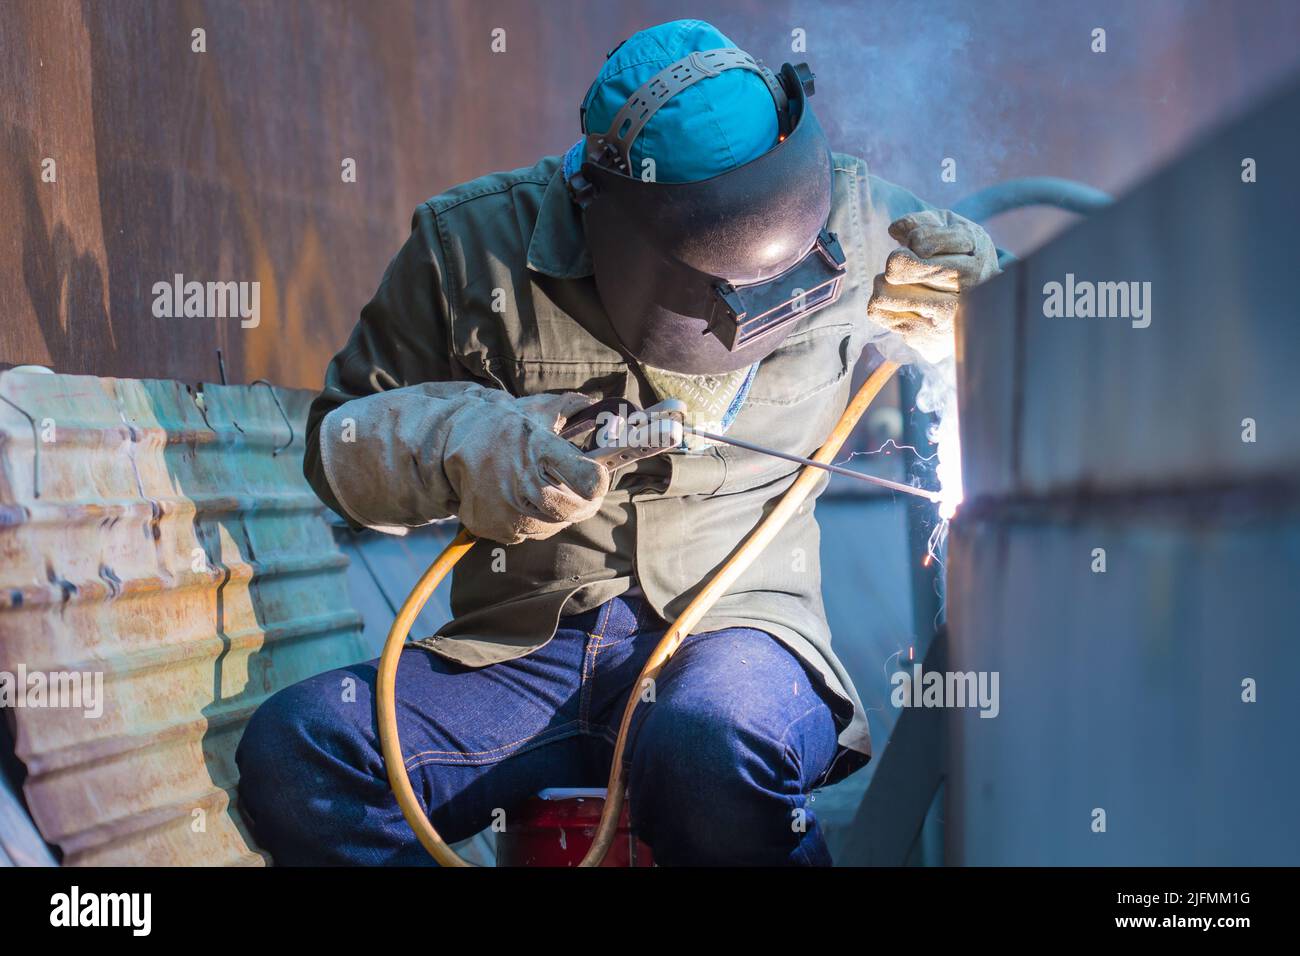 Homme portant des vêtements de protection et répare la plaque de soudage construction industrielle huile et gaz ou réservoir de stockage à l'intérieur d'espaces confinés Banque D'Images